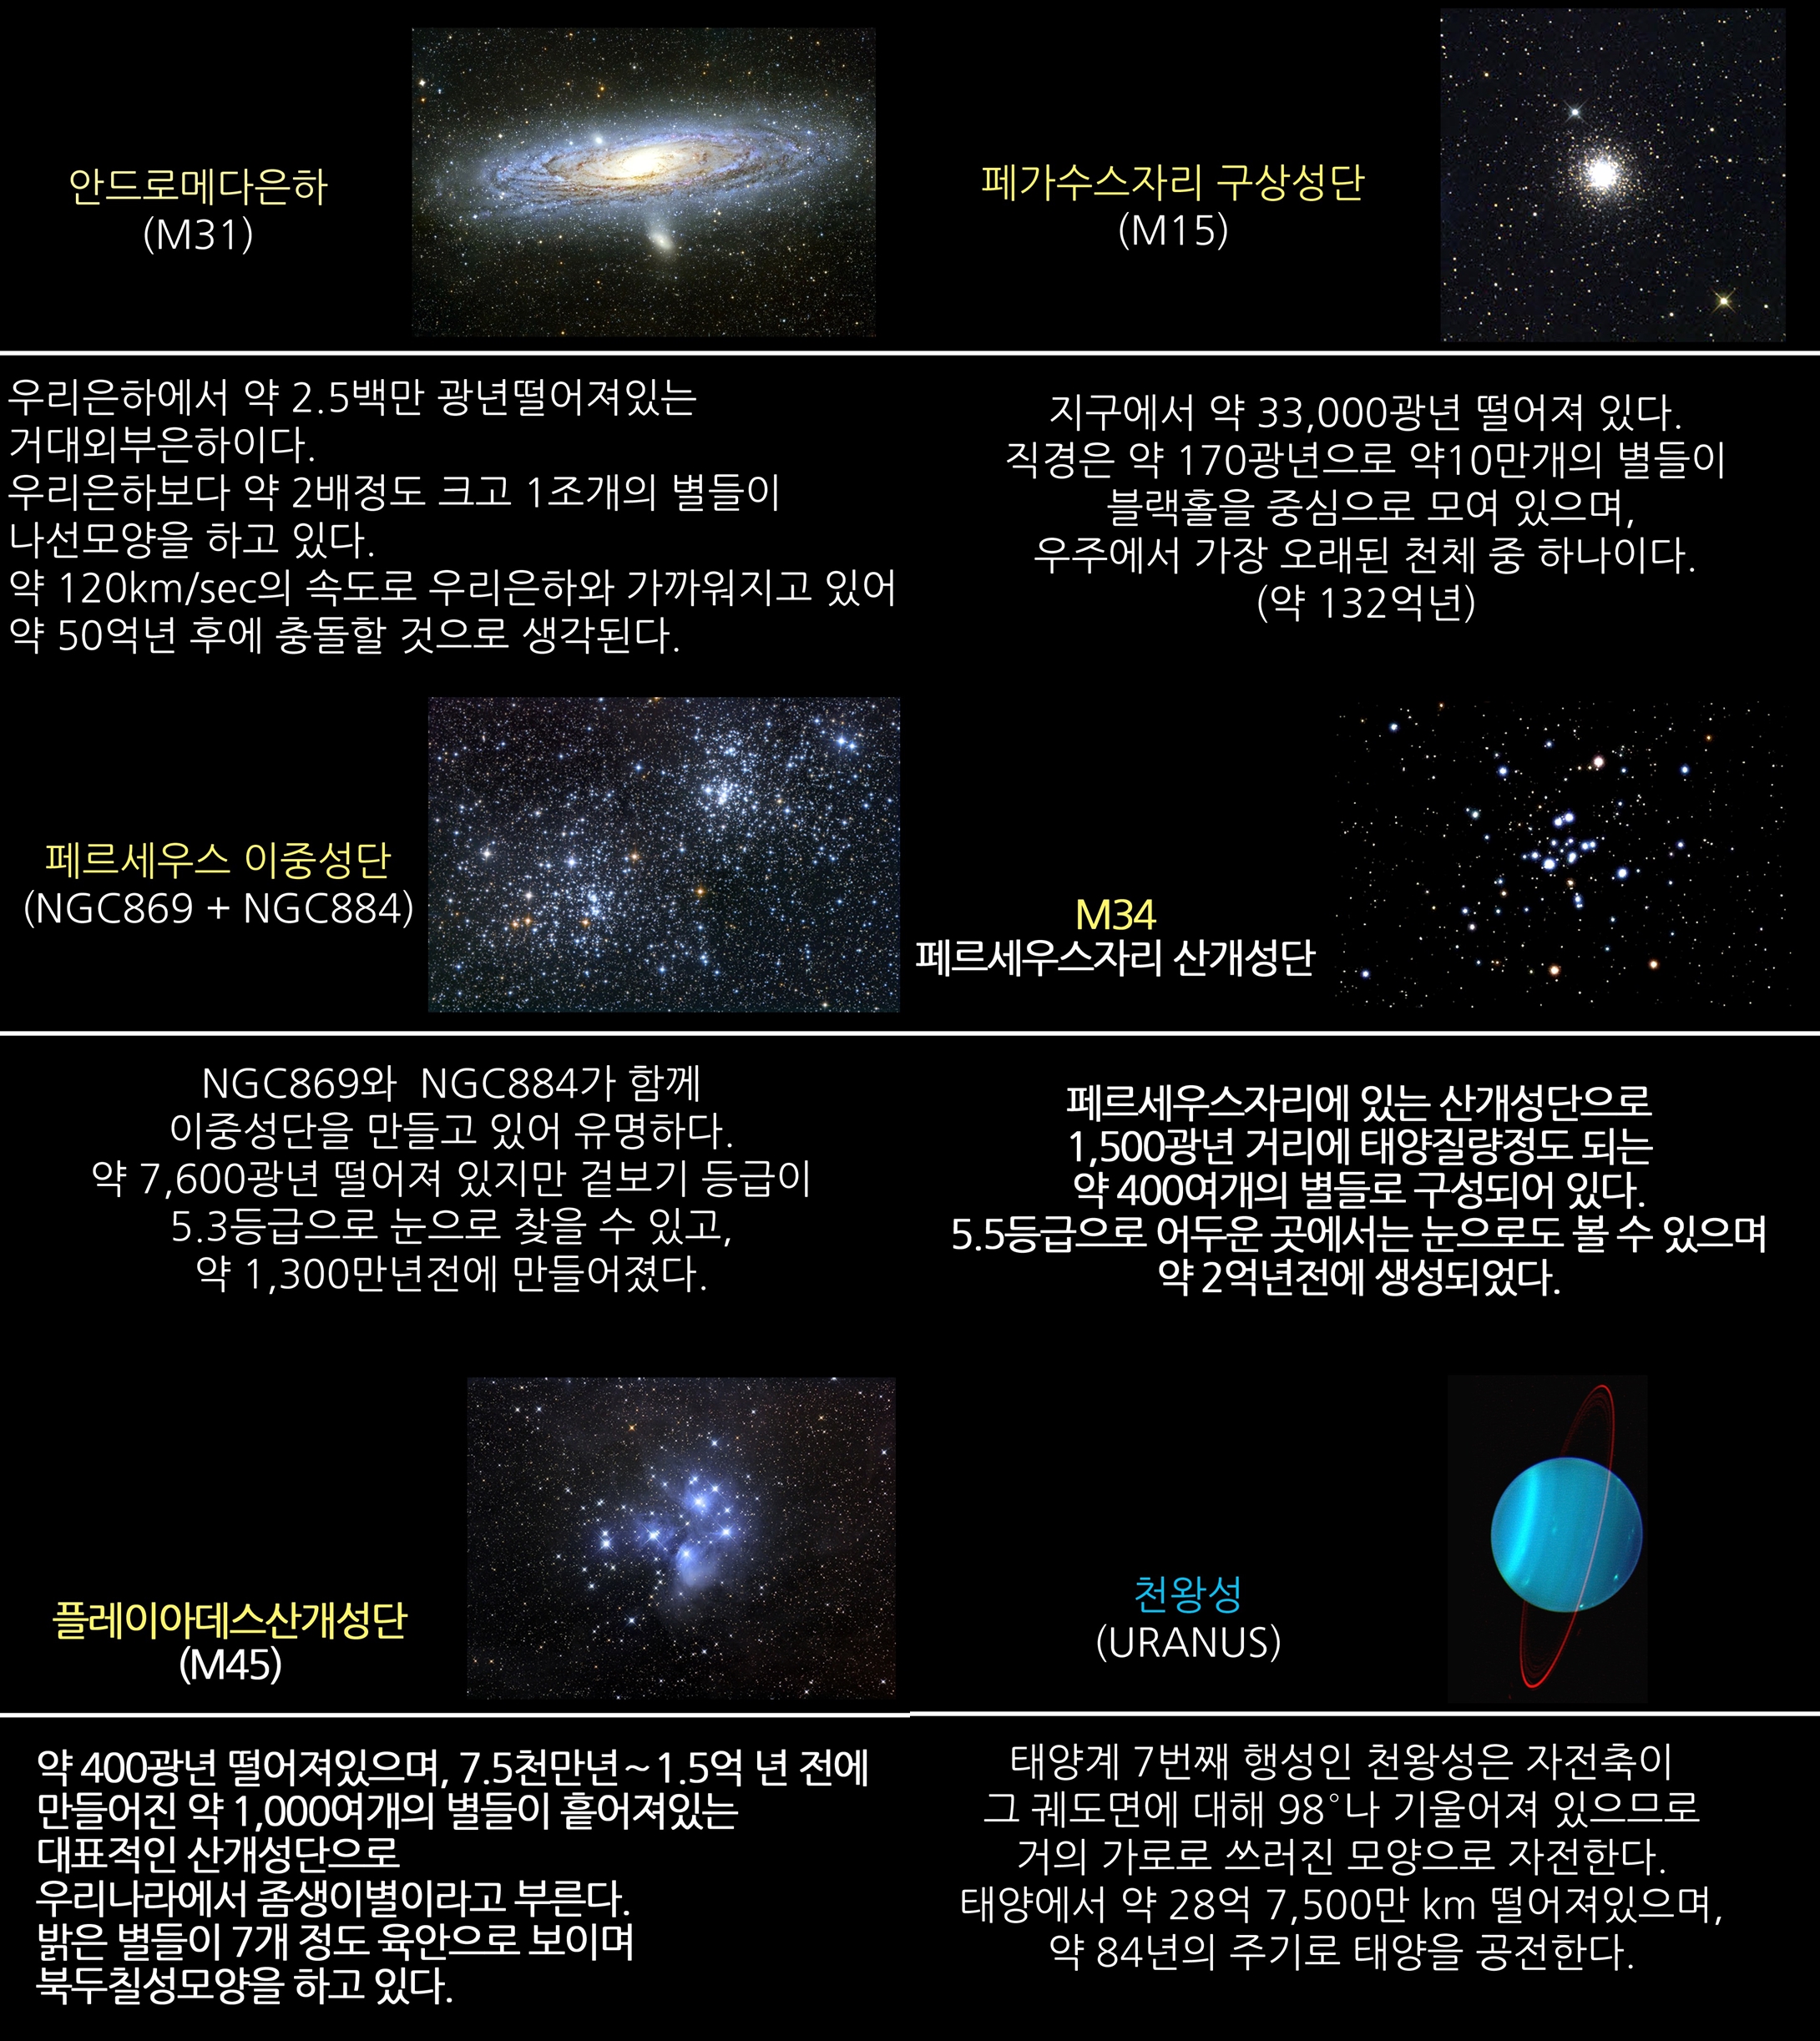 2017년 11월 주요 천체관측 대상